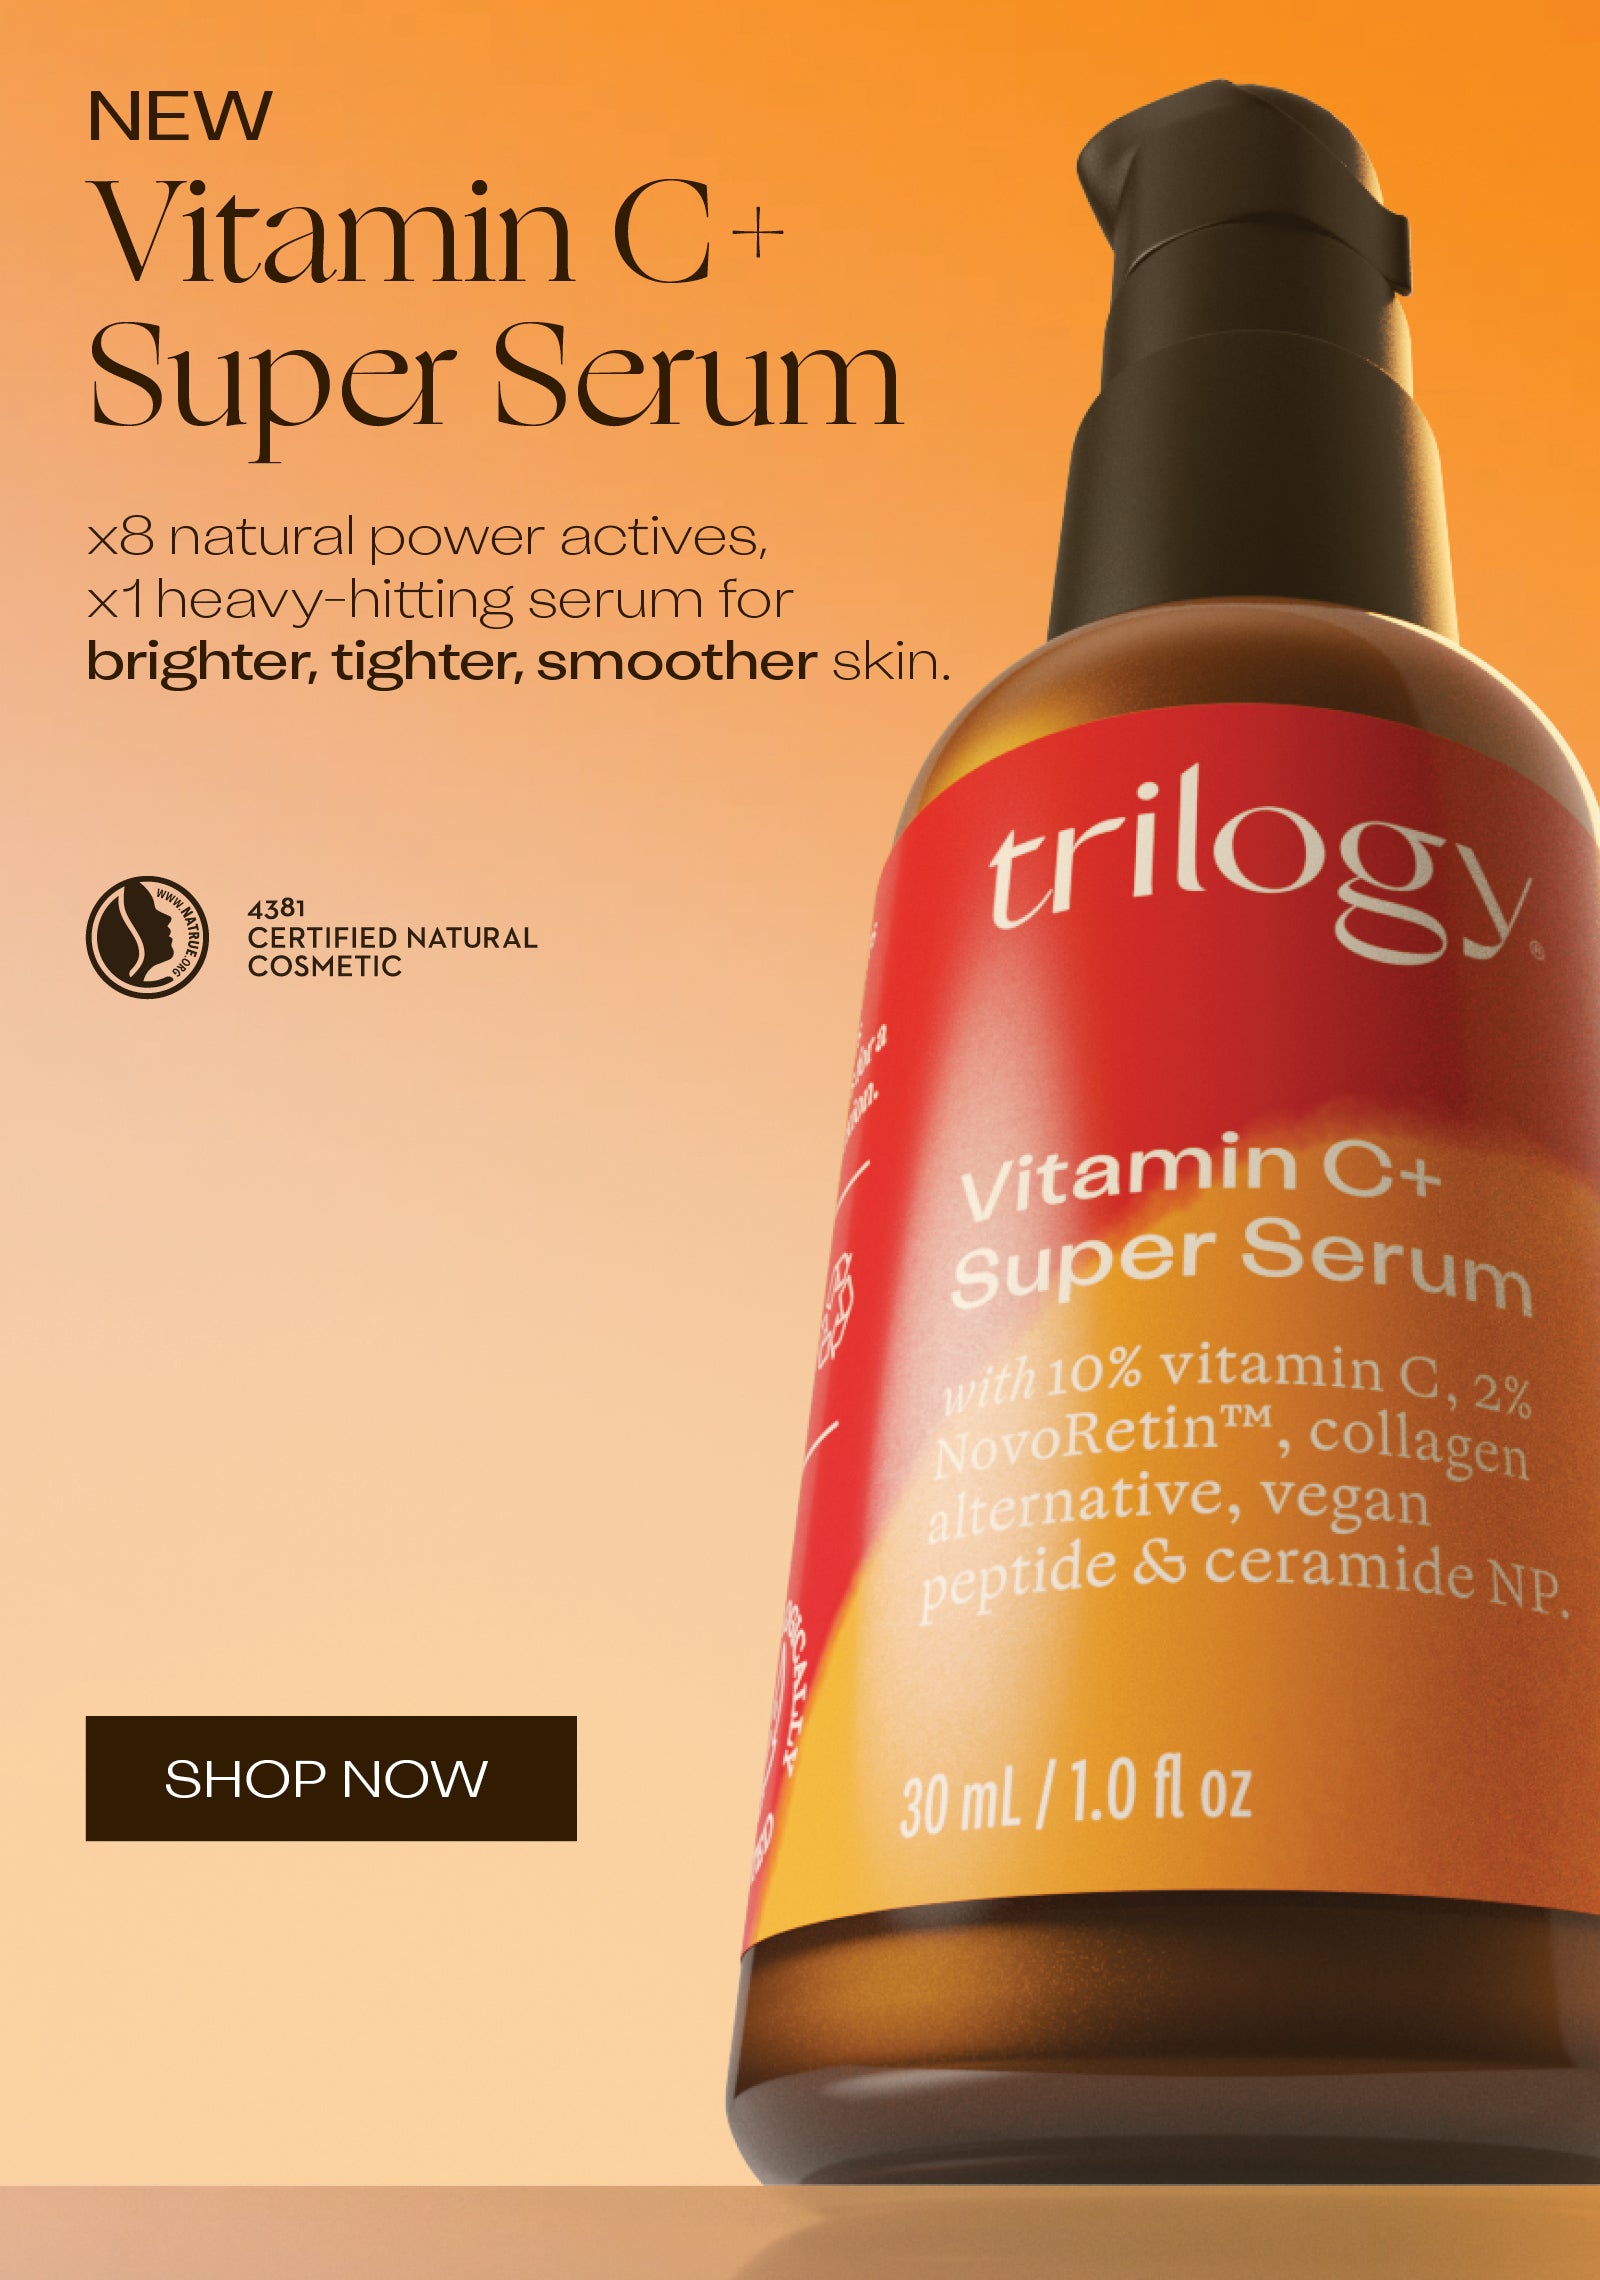 NEW Vitamin C+ Super Serum